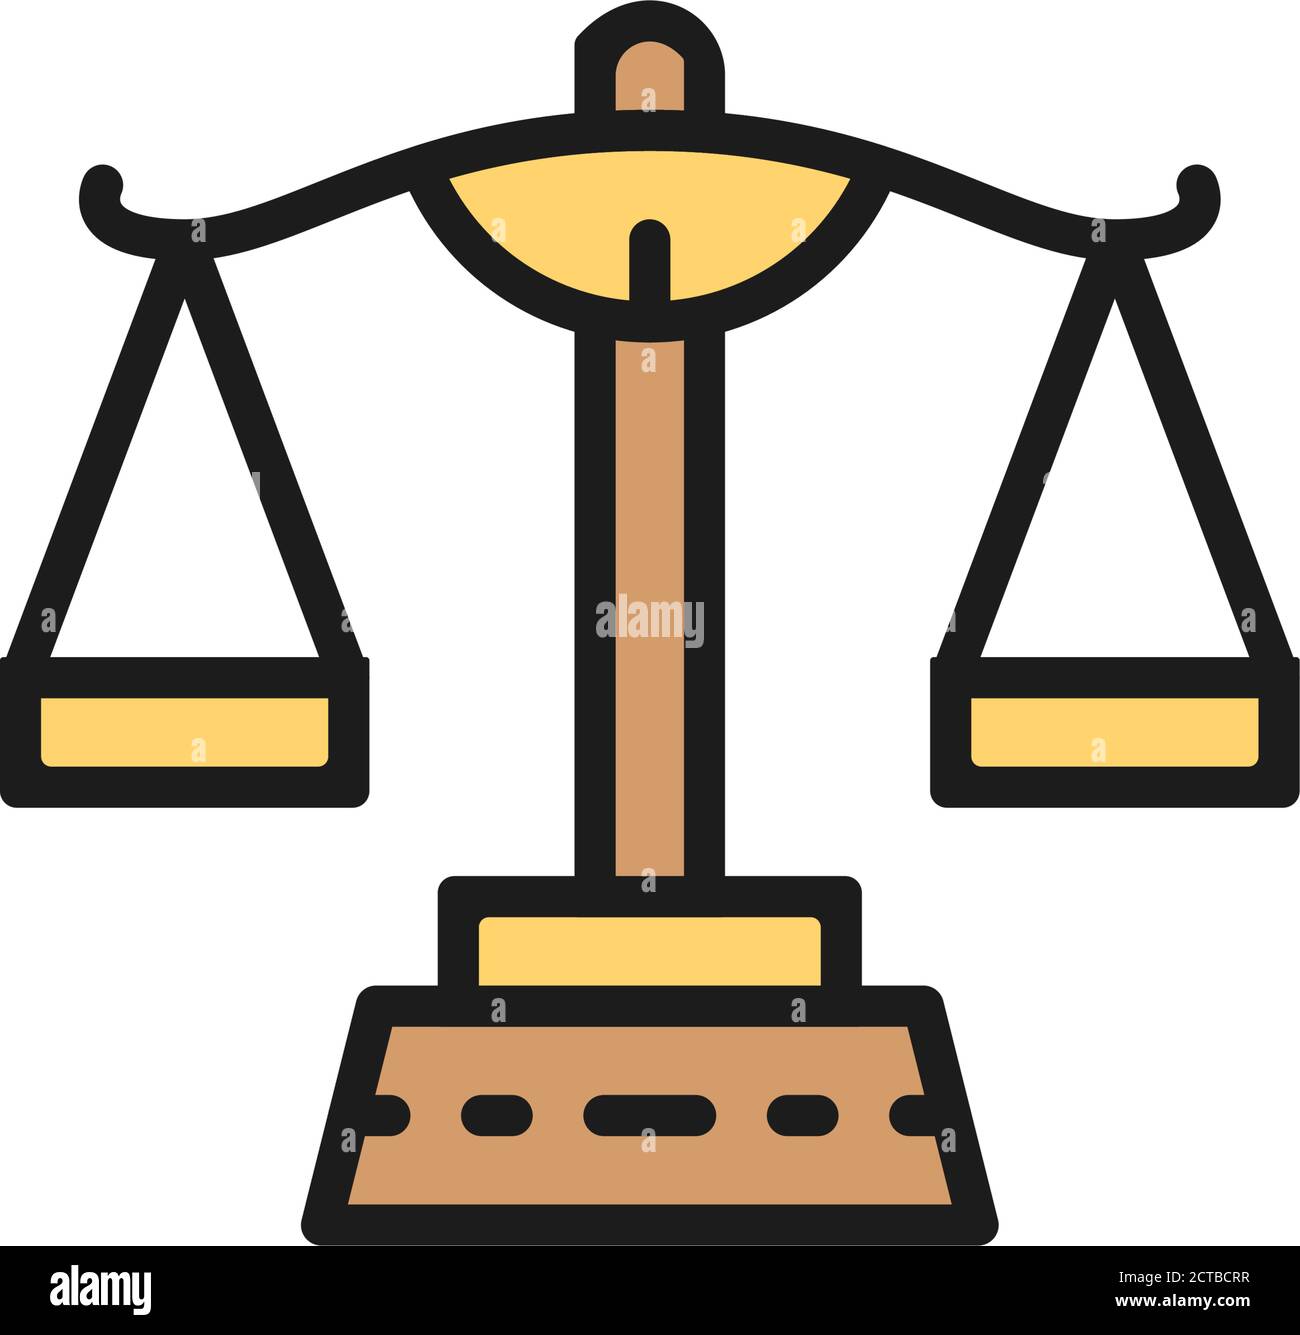 Gerechtigkeitswaage, symbol für flache Waage-Farblinie Stock-Vektorgrafik -  Alamy